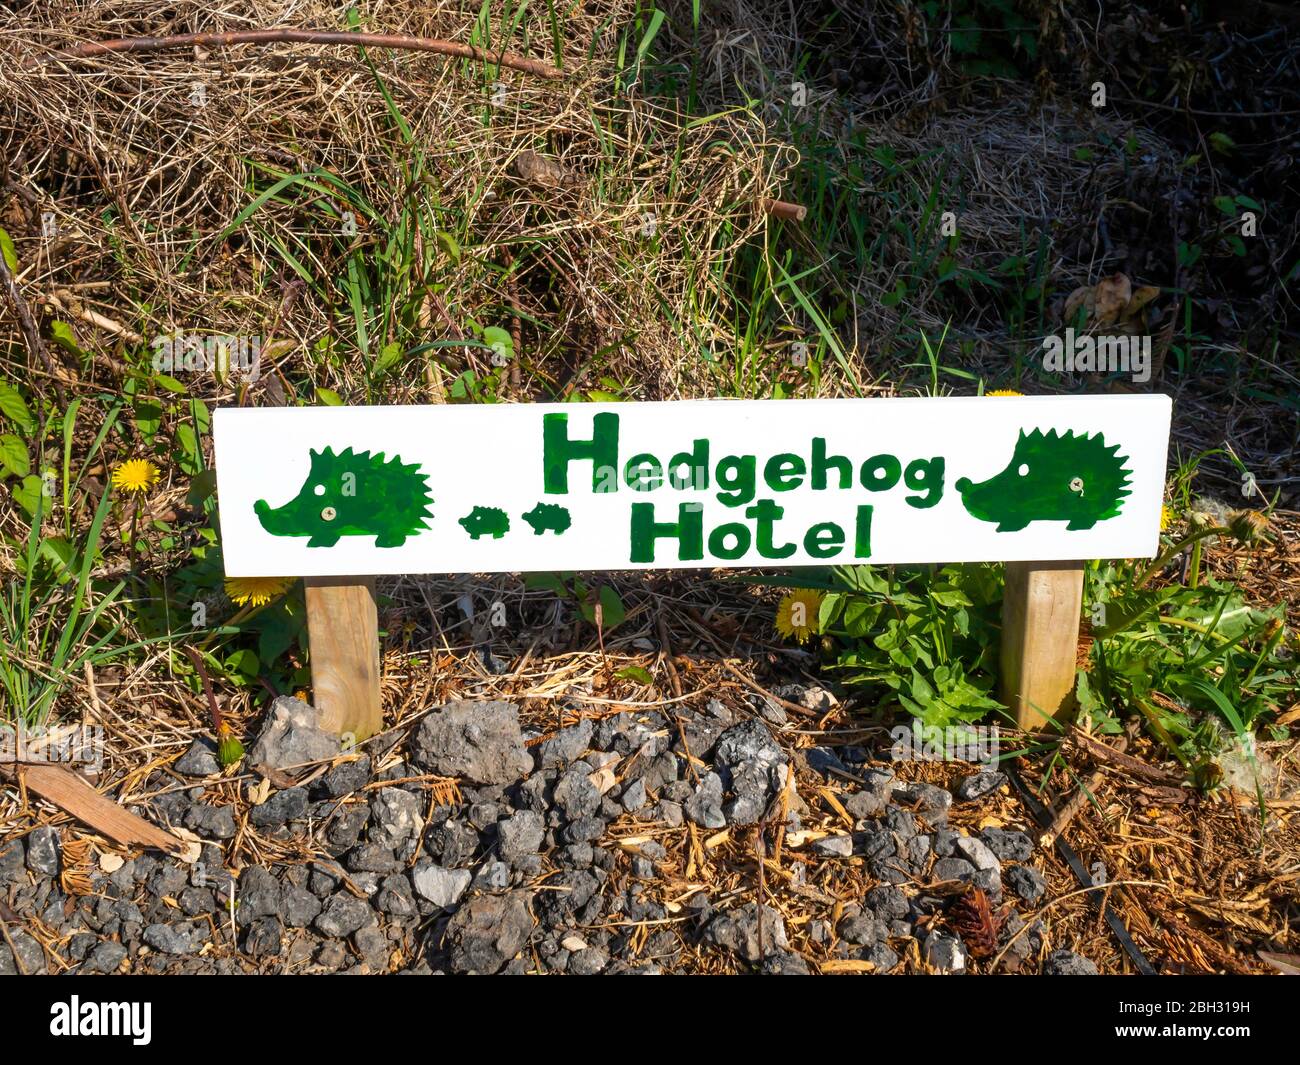 Hedgehog Hotel segno in angolo di giardini allotment dove c'è un denso ispessimento che fornisce la copertura sicura per hedgehog Foto Stock